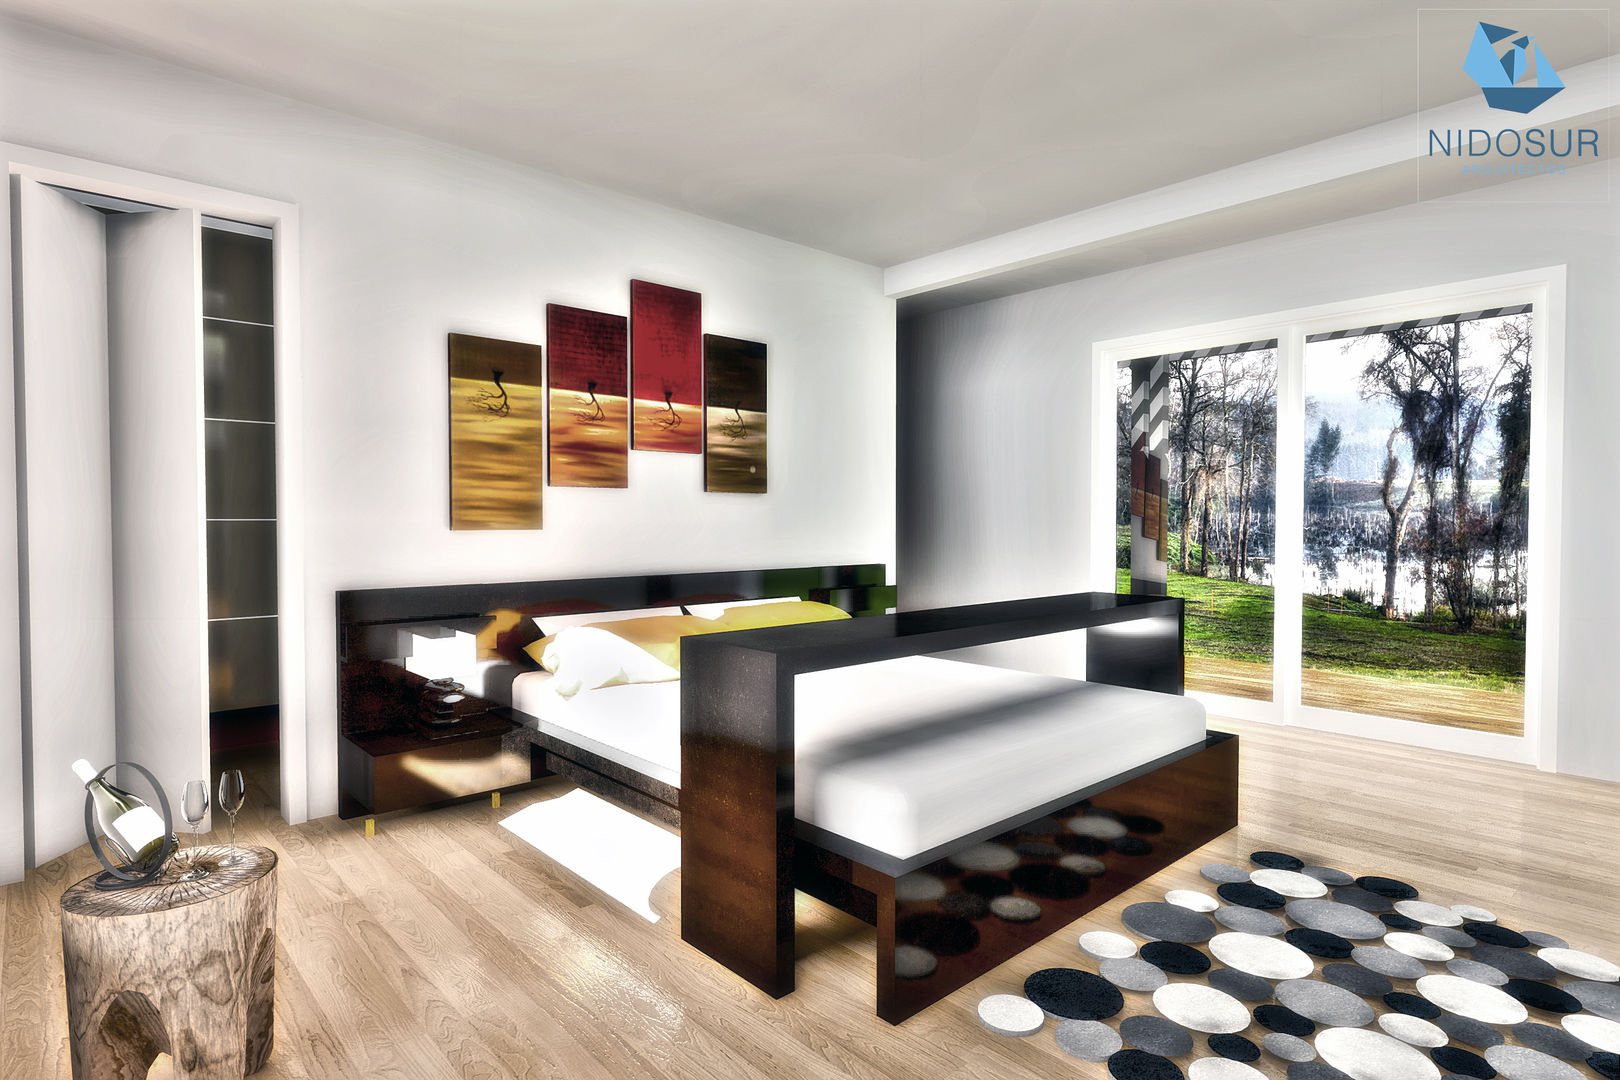 Dormitorio NidoSur Arquitectos - Valdivia Dormitorios modernos: Ideas, imágenes y decoración